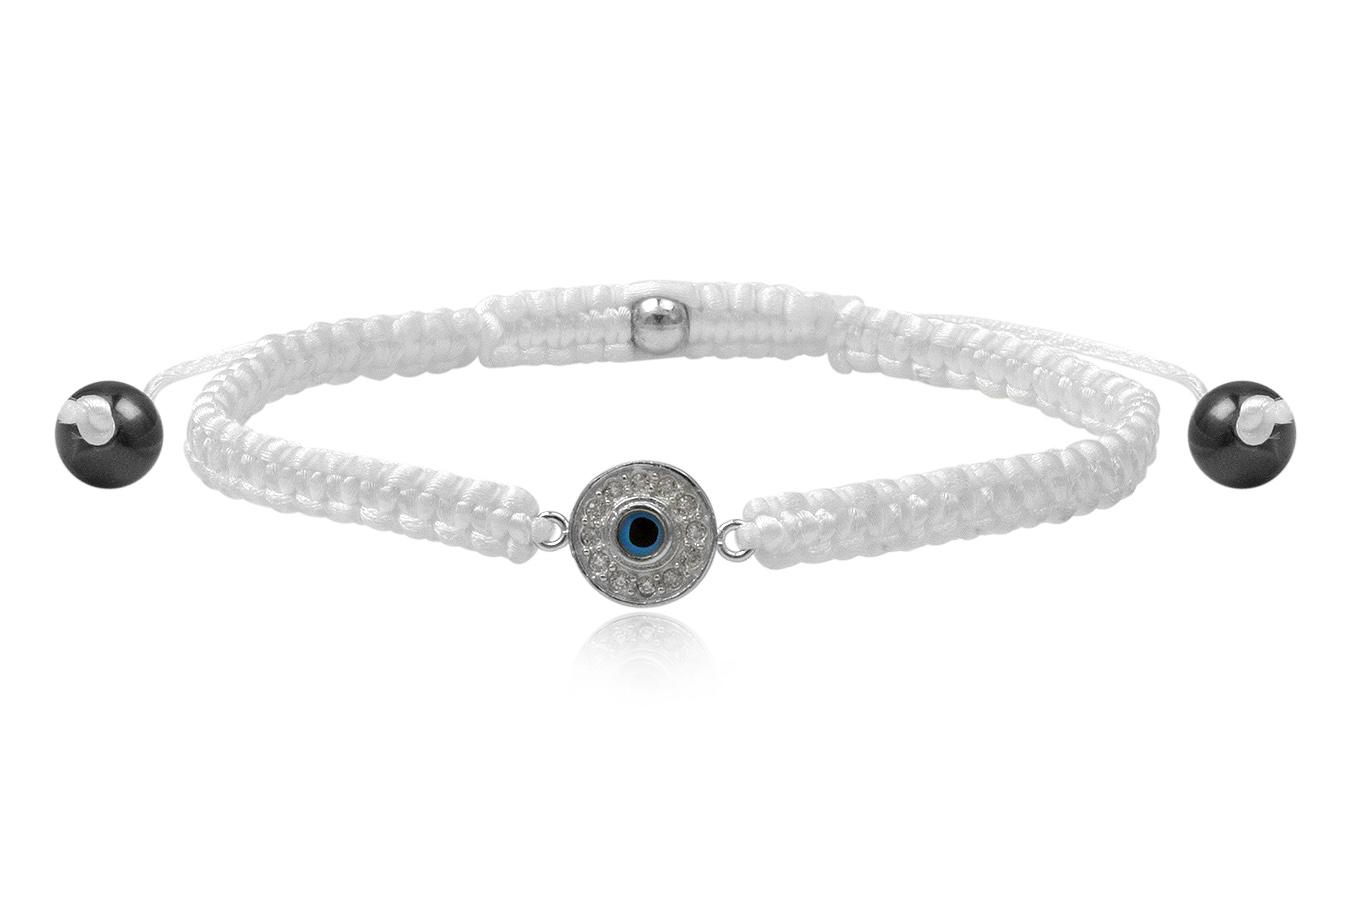 bracelet-macramé-soie-blanche-petit-œil-rond-argent-925-zirconium-ANW1893